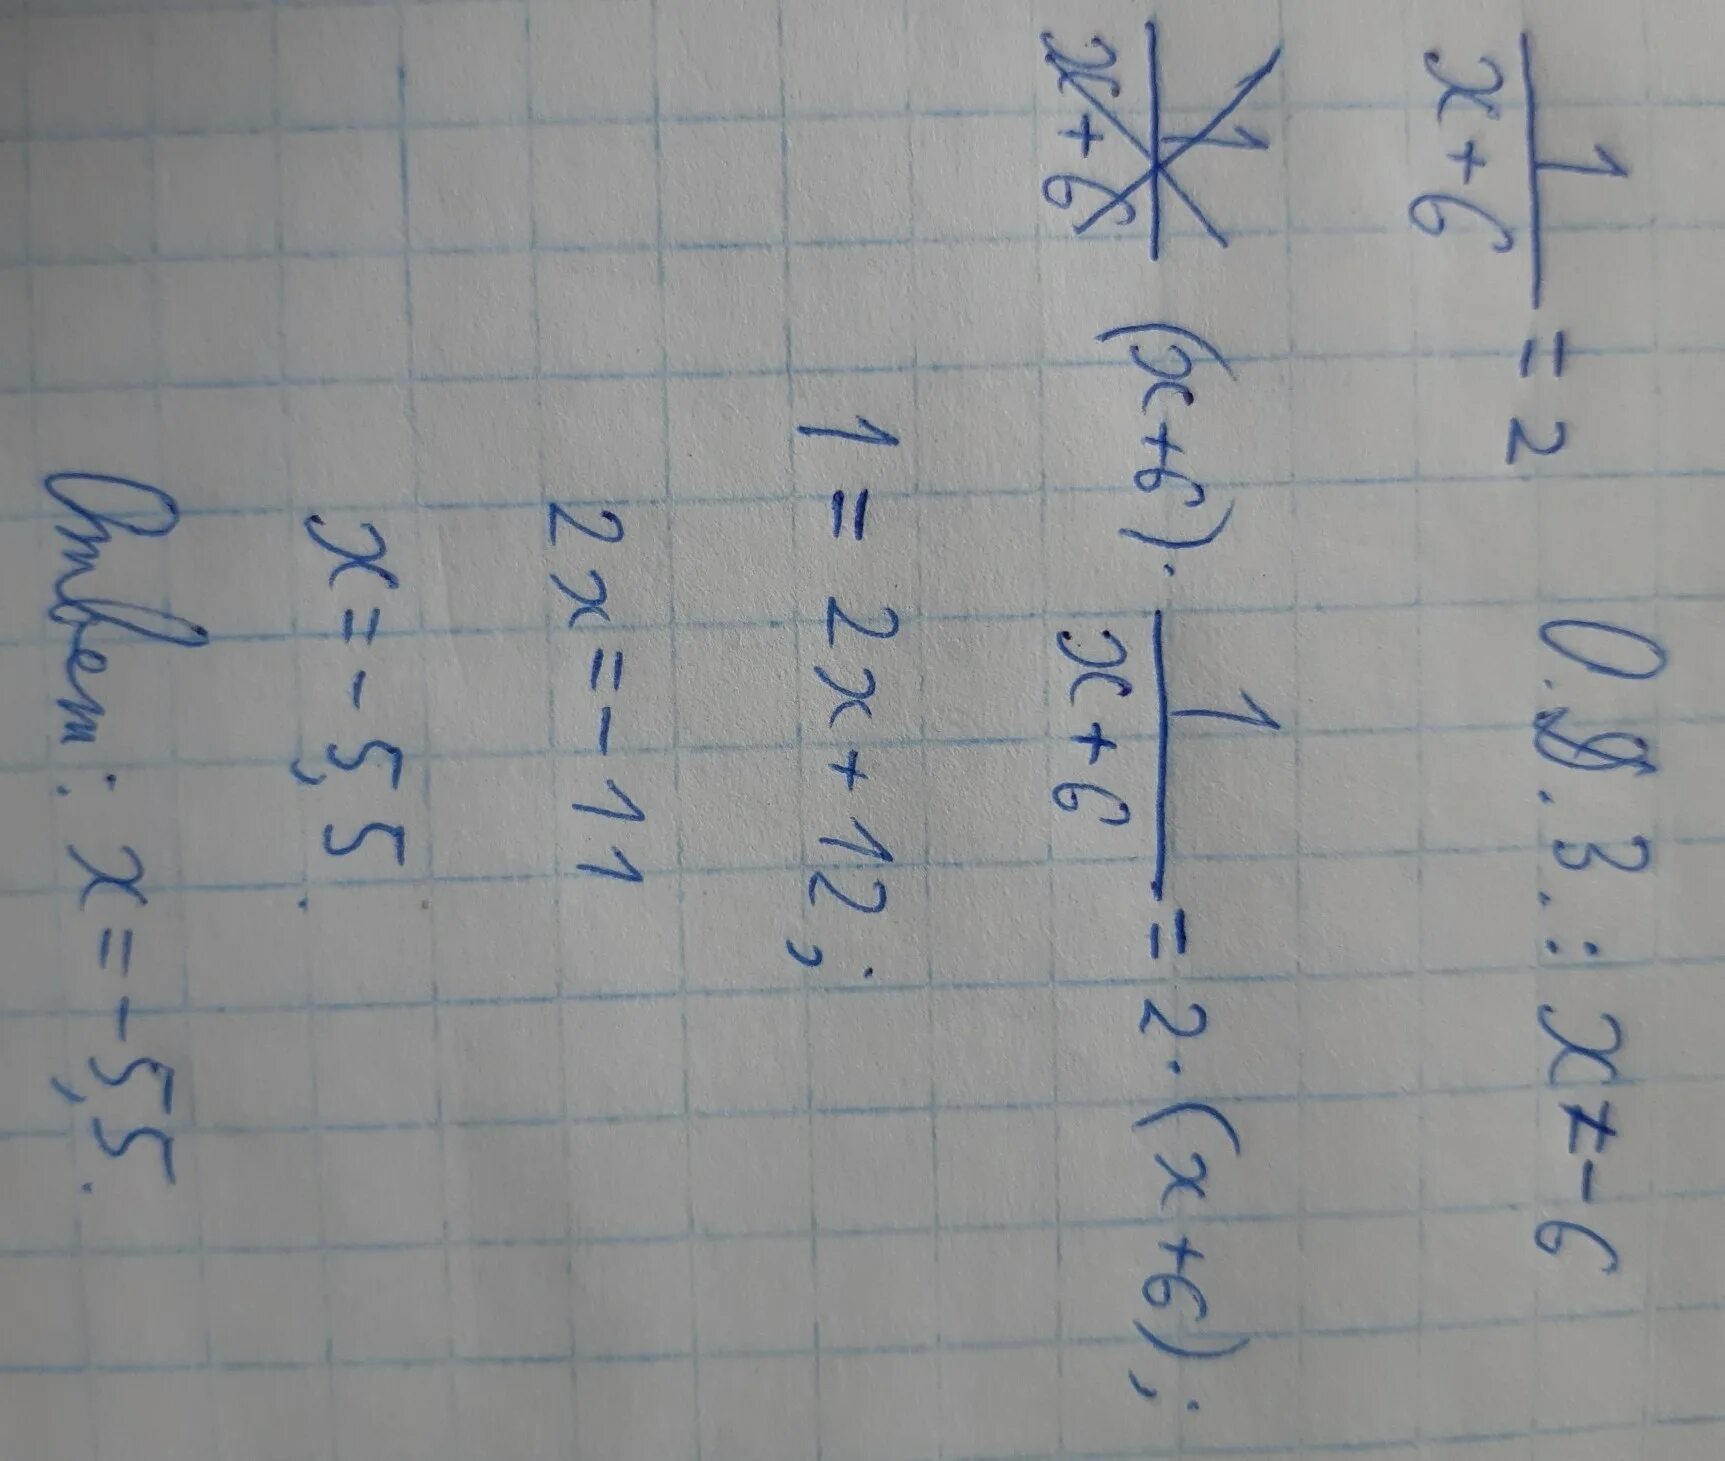 2x 7 6 1 найдите корень уравнения. Найдите корень уравнения 1/х+6=2. 1/Х+6=2. Найдите корень уравнения 1/х+6 равно 2. Как найти корень уравнения 1/x+6=2.